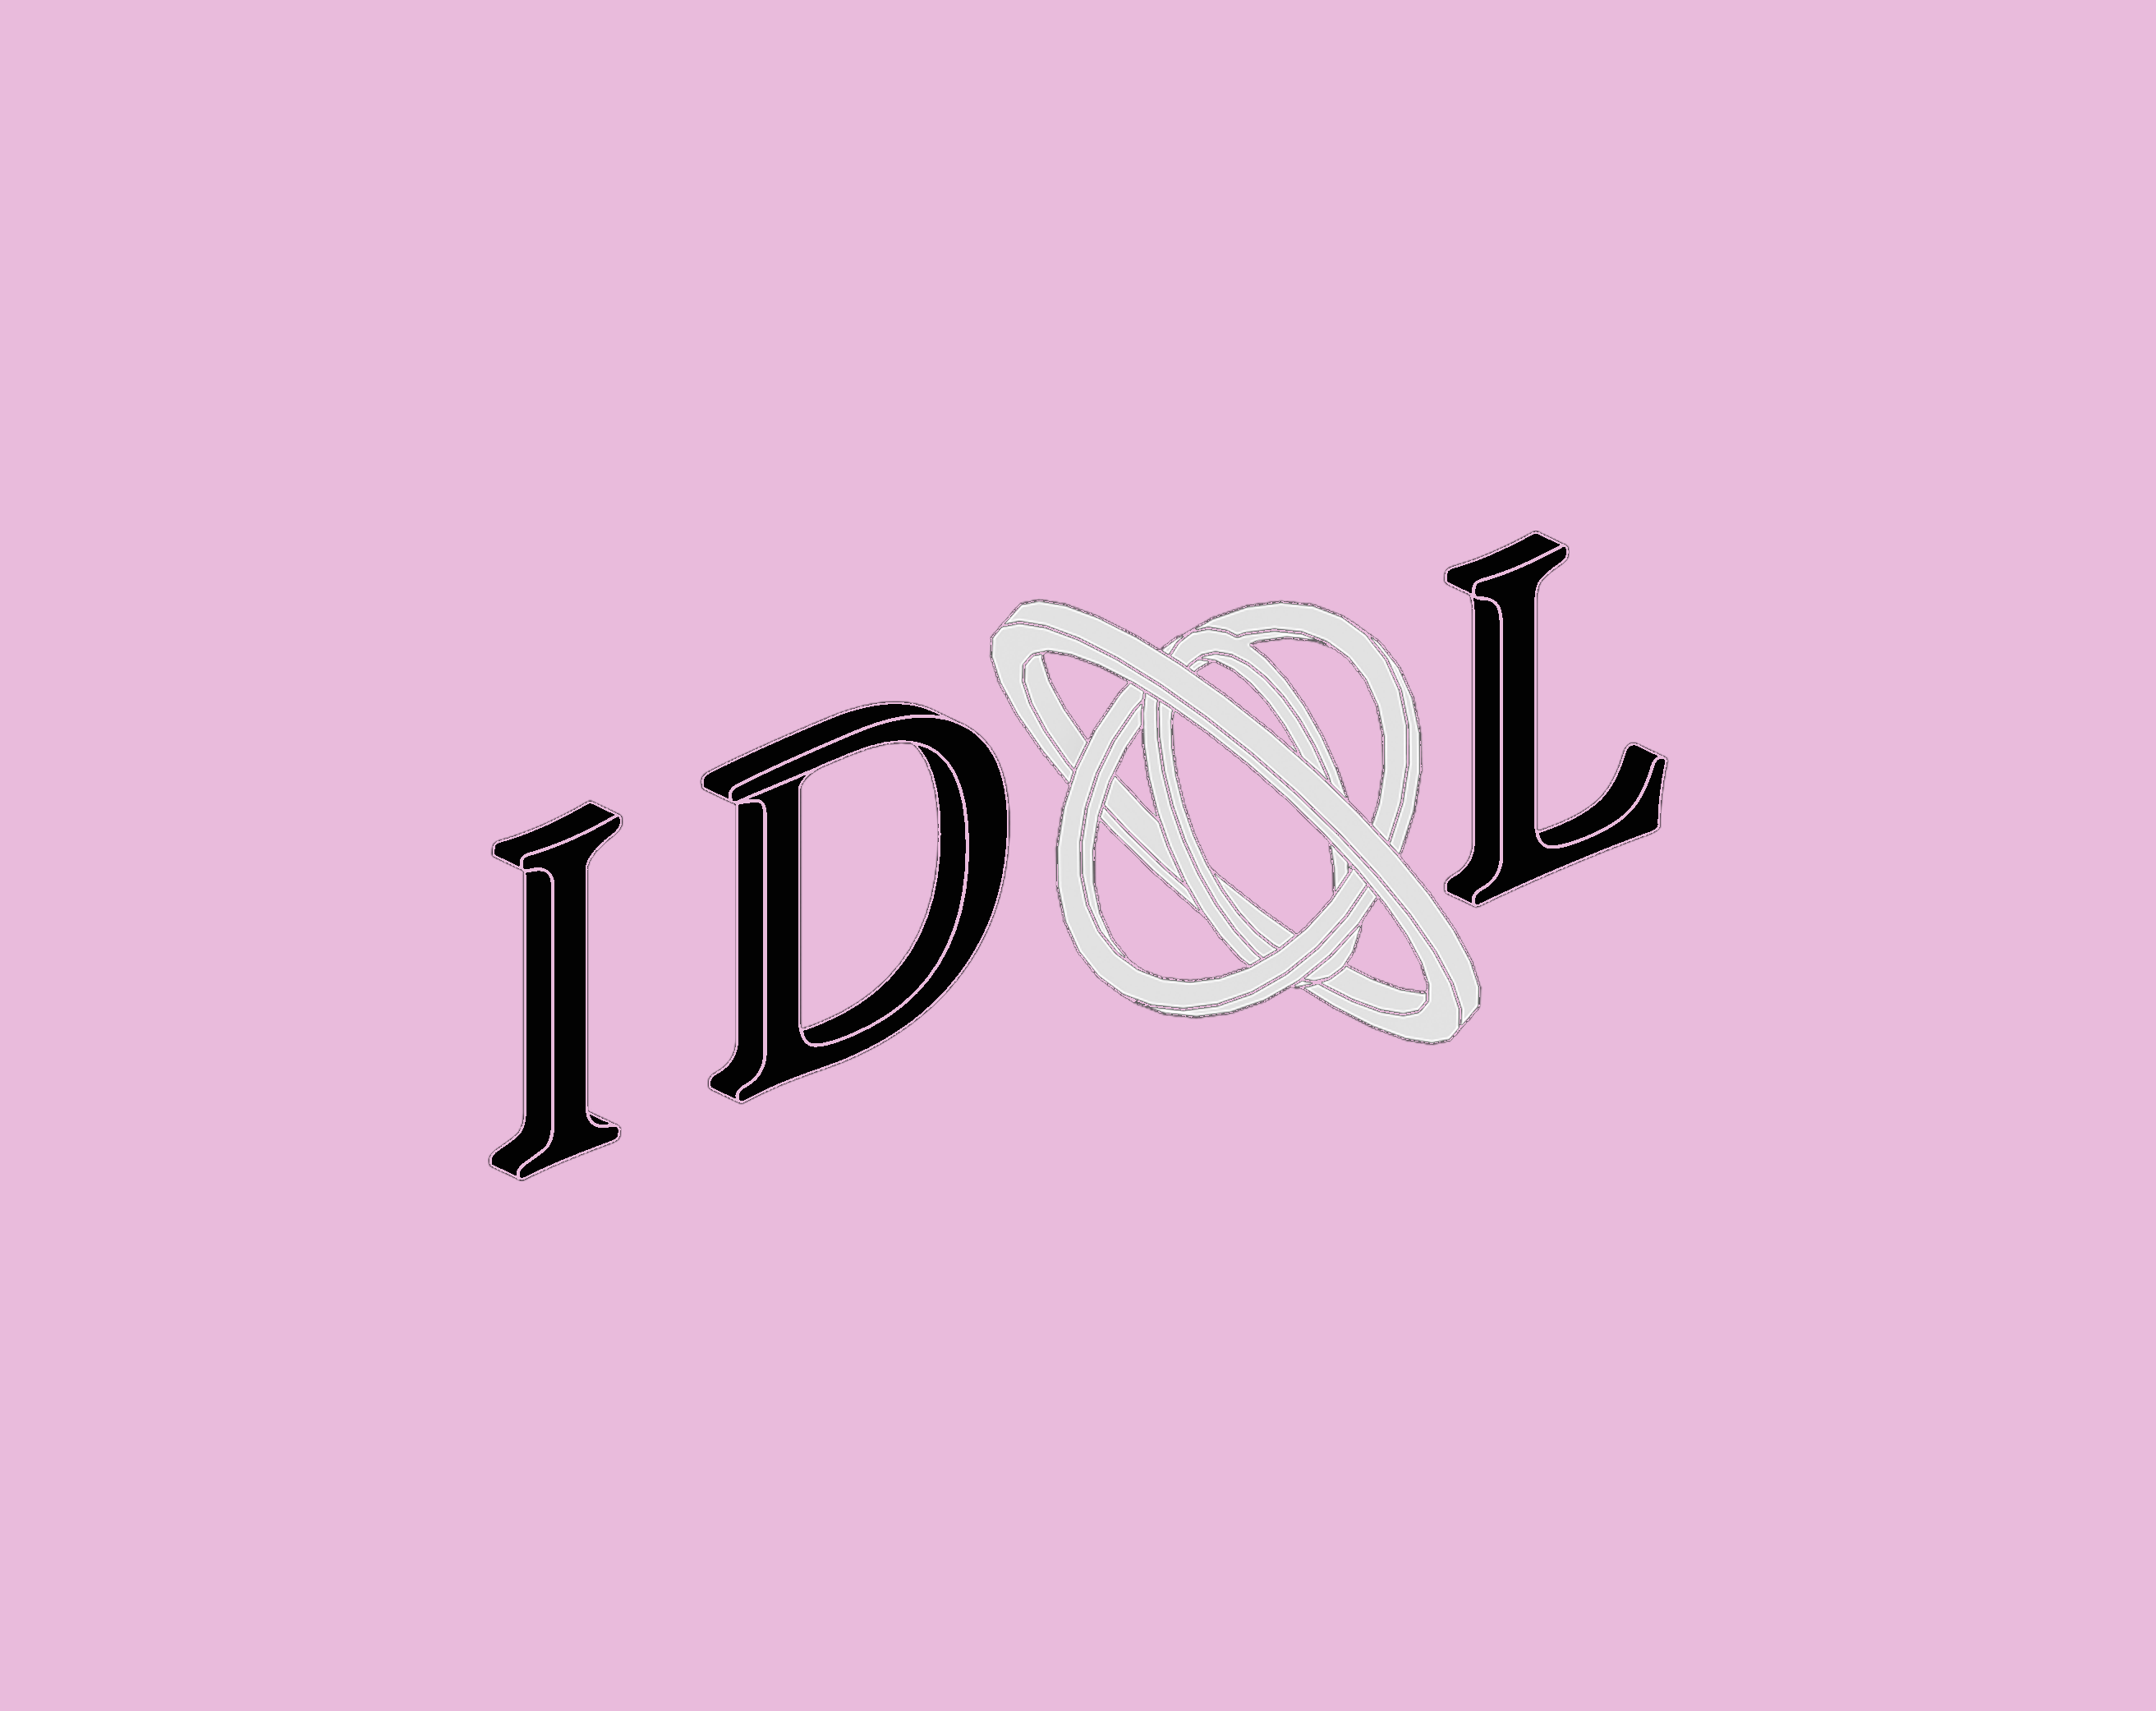 IDOL - Entry 1